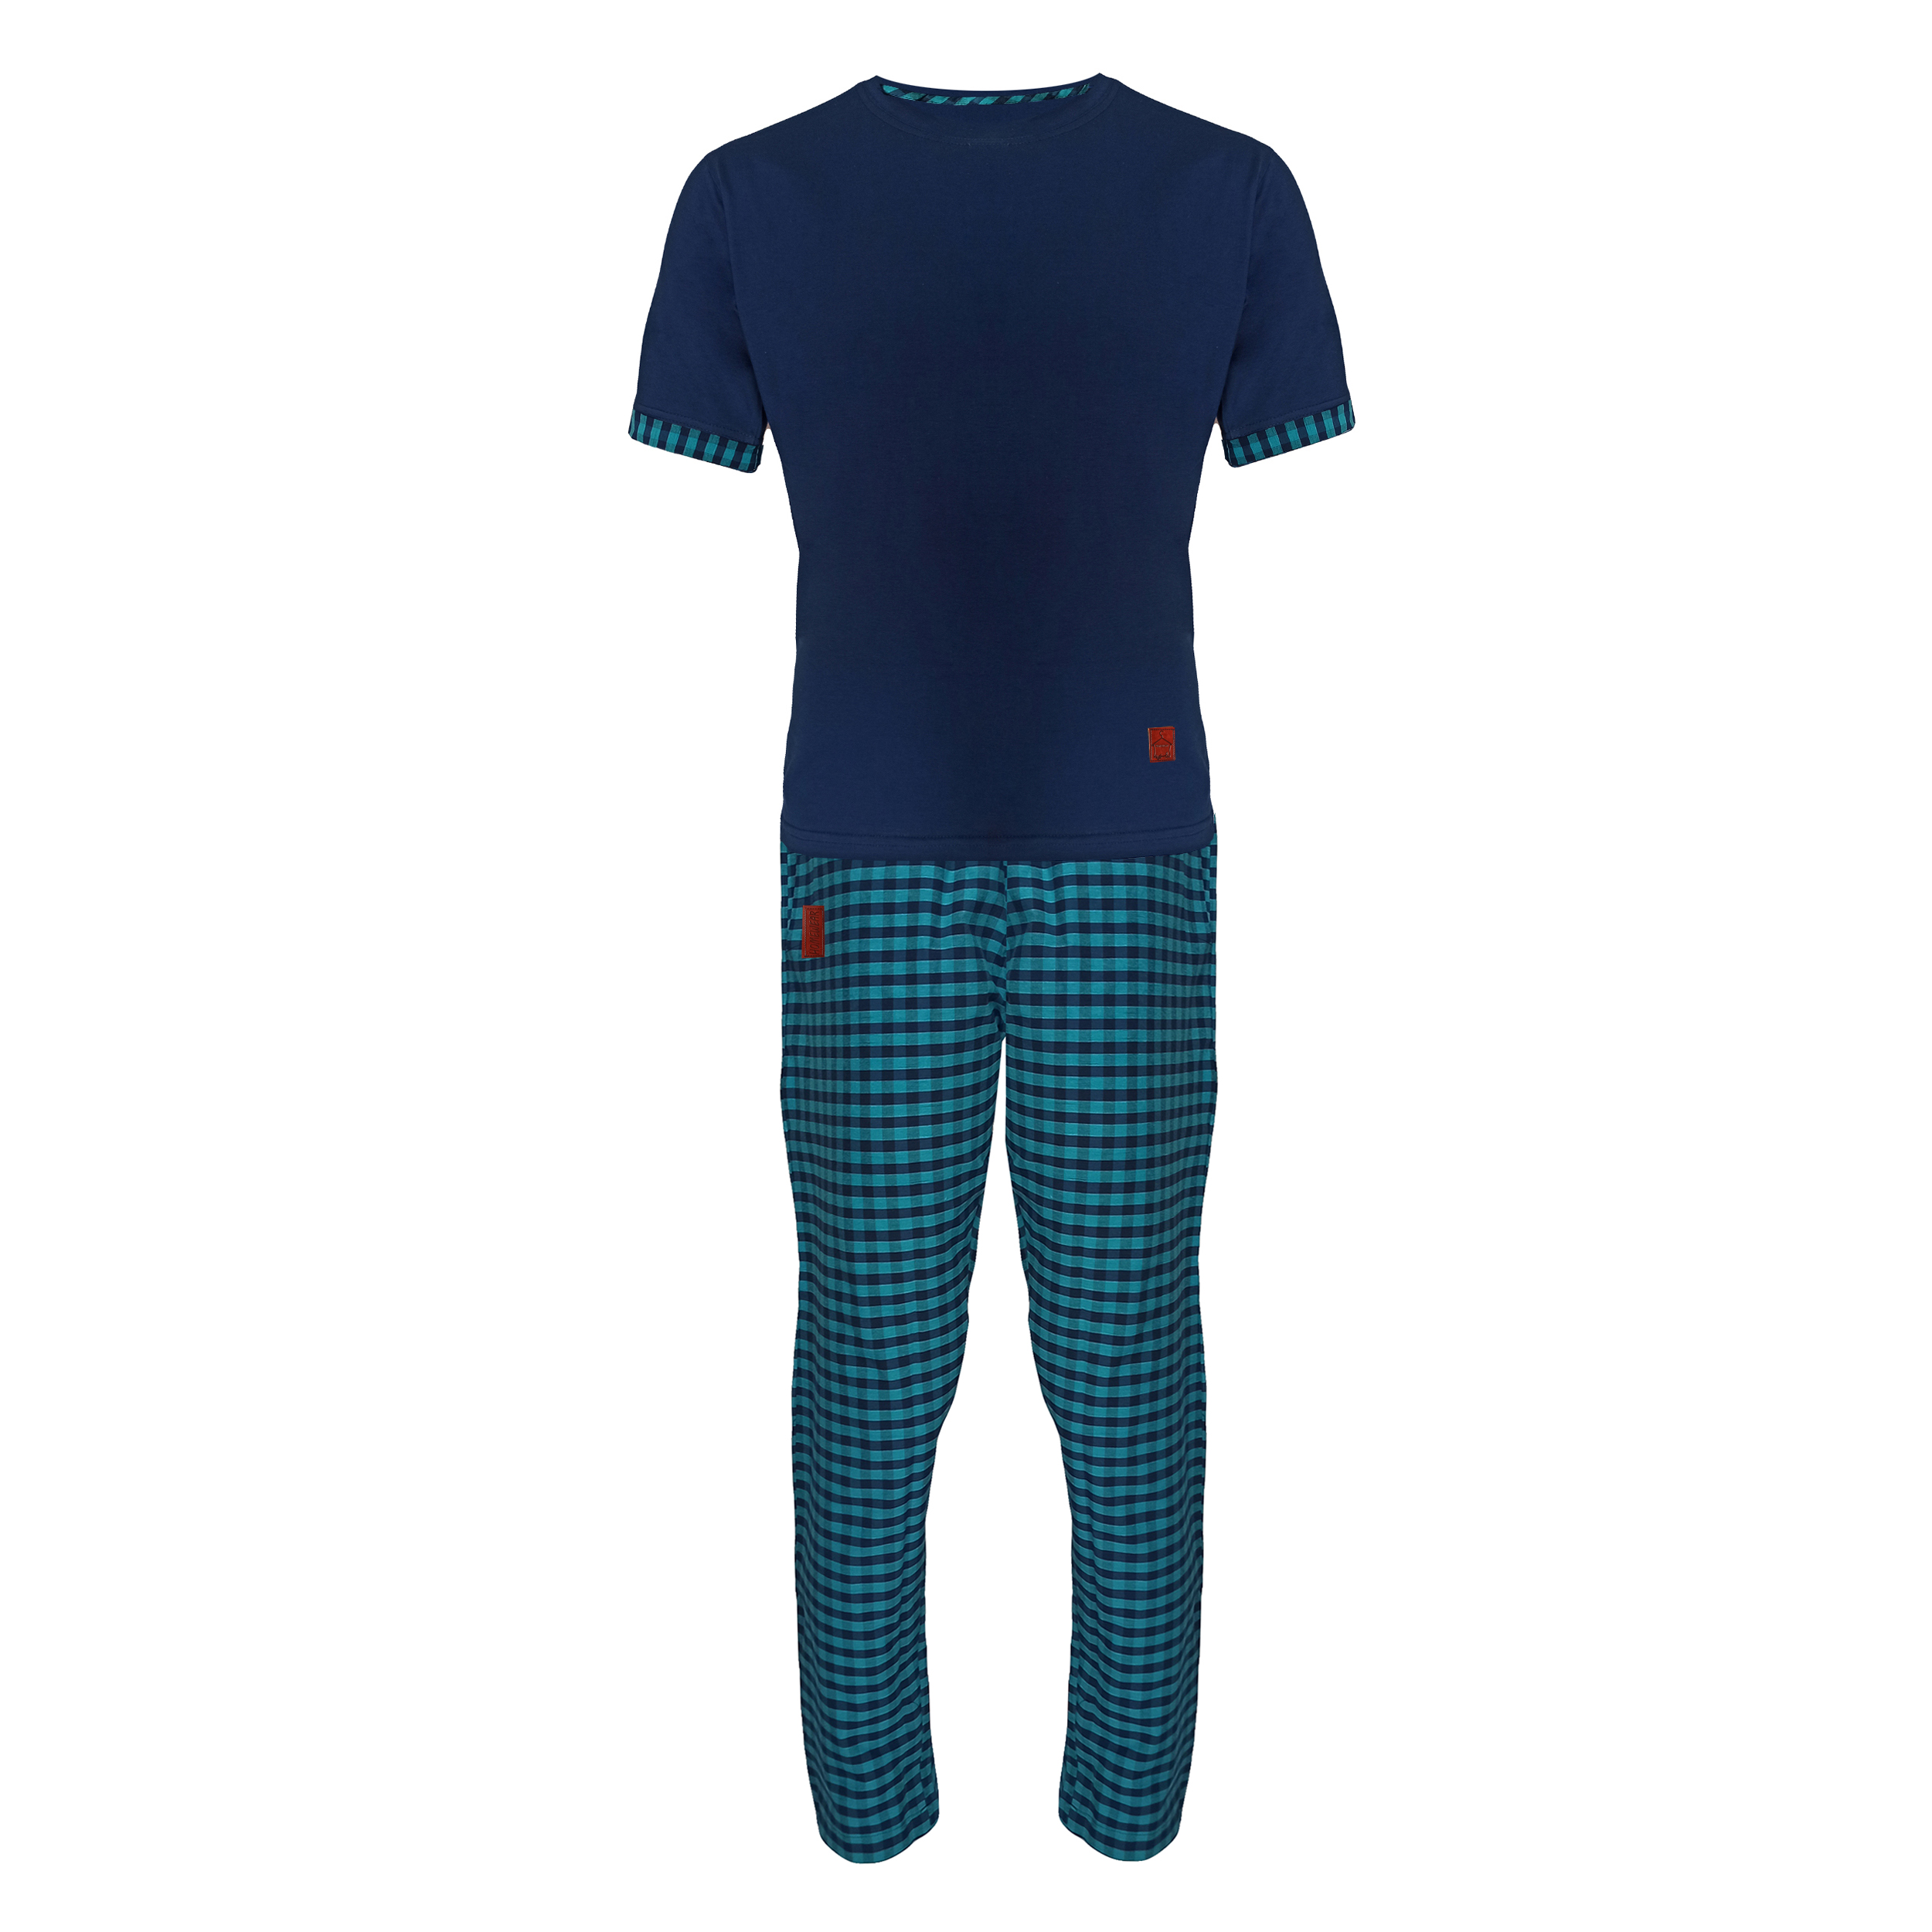 ست تی شرت و شلوار مردانه لباس خونه مدل طه 000124 کد 4899588 رنگ آبی کاربنی